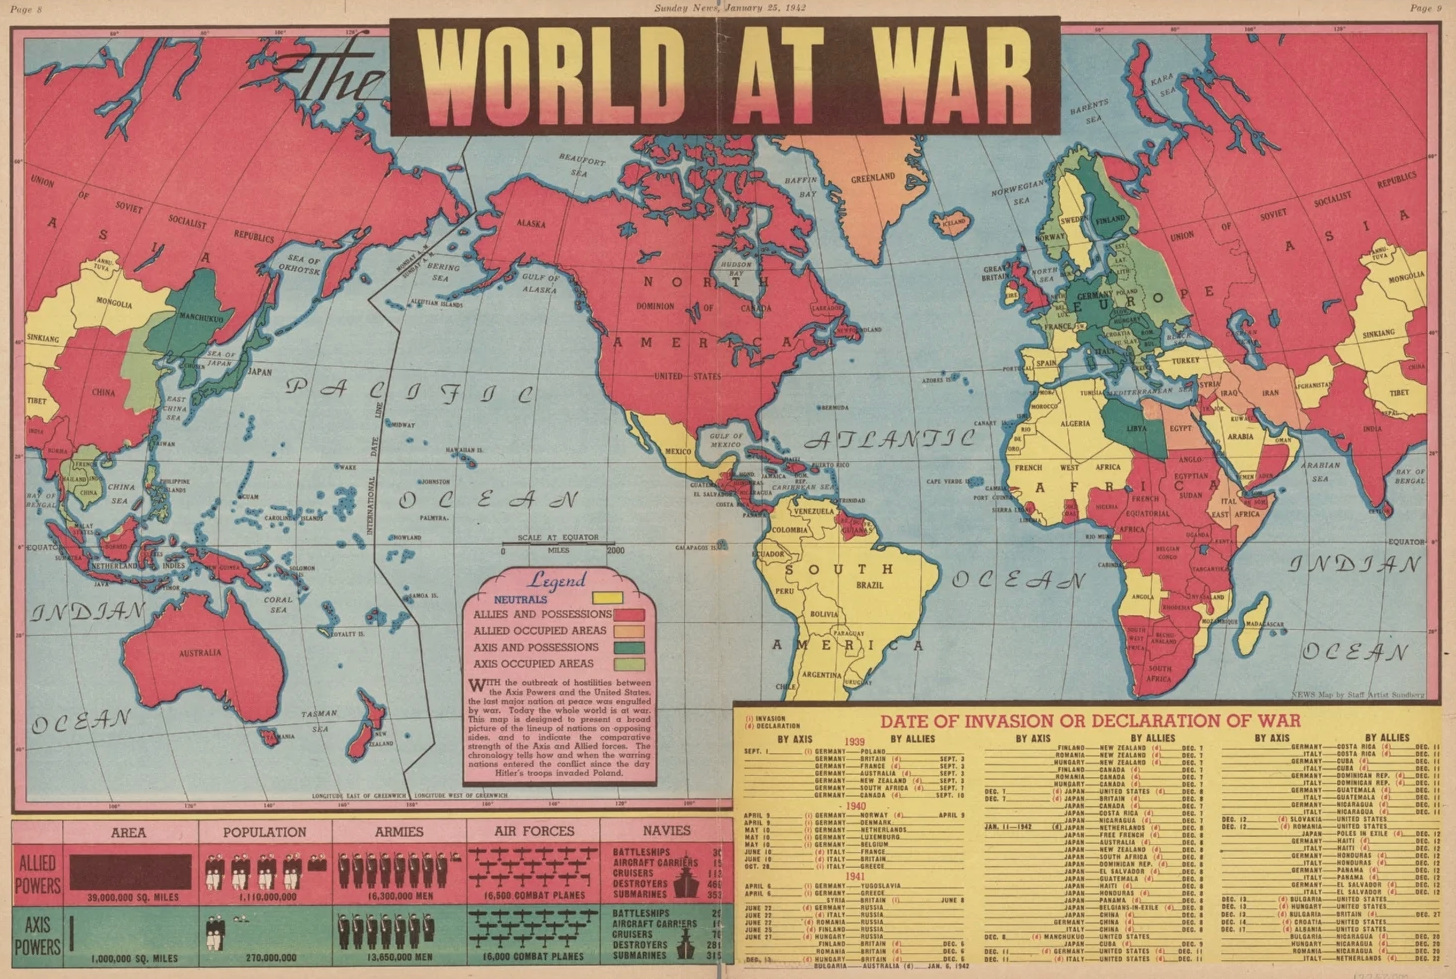 sundberg_map_world_at_war_1942.png